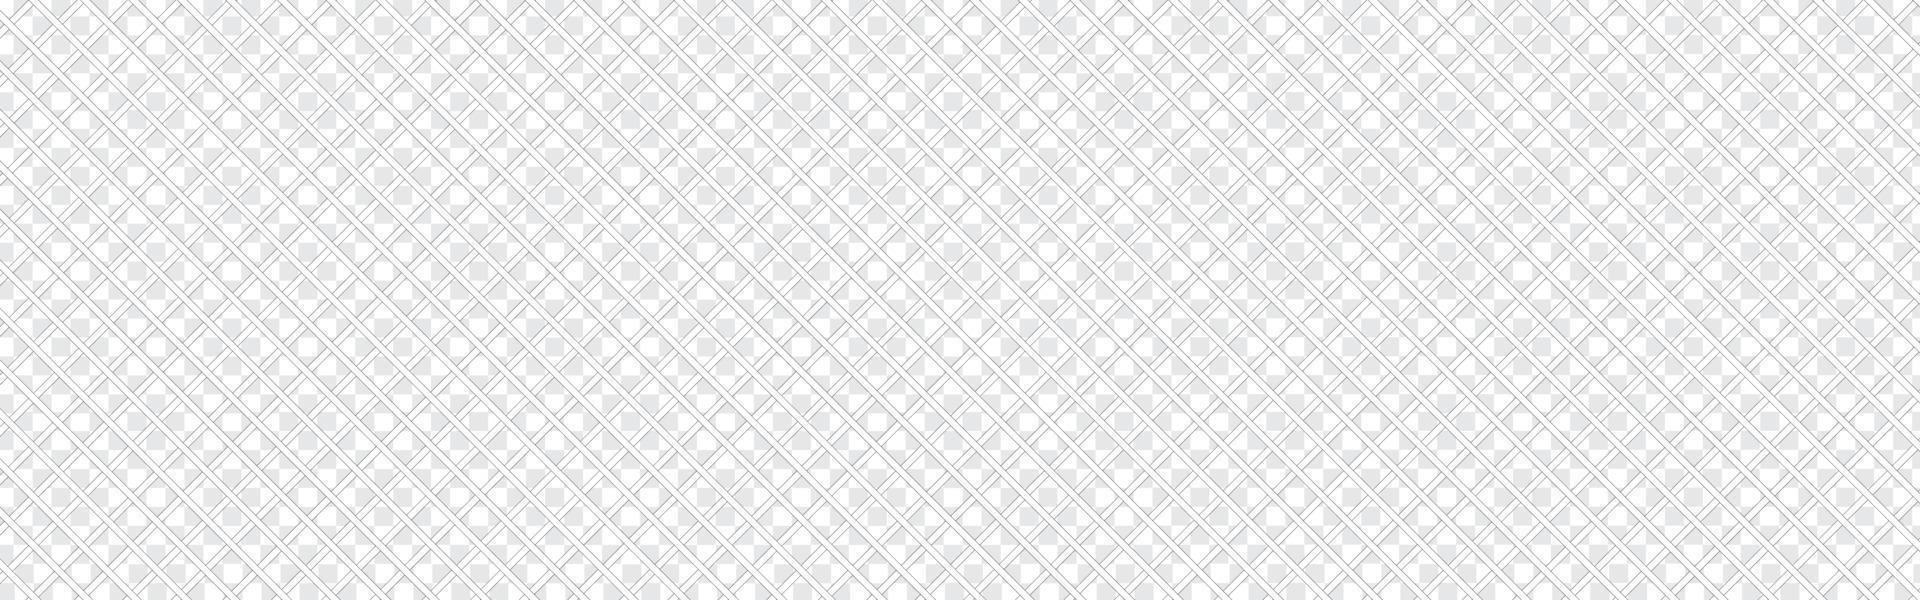 sömlöst linjärt mönster med tunna polylinjer, polygoner och. abstrakt geometrisk struktur med korsande tunna linjer. snygg bakgrund i grå och vita färger. vektor